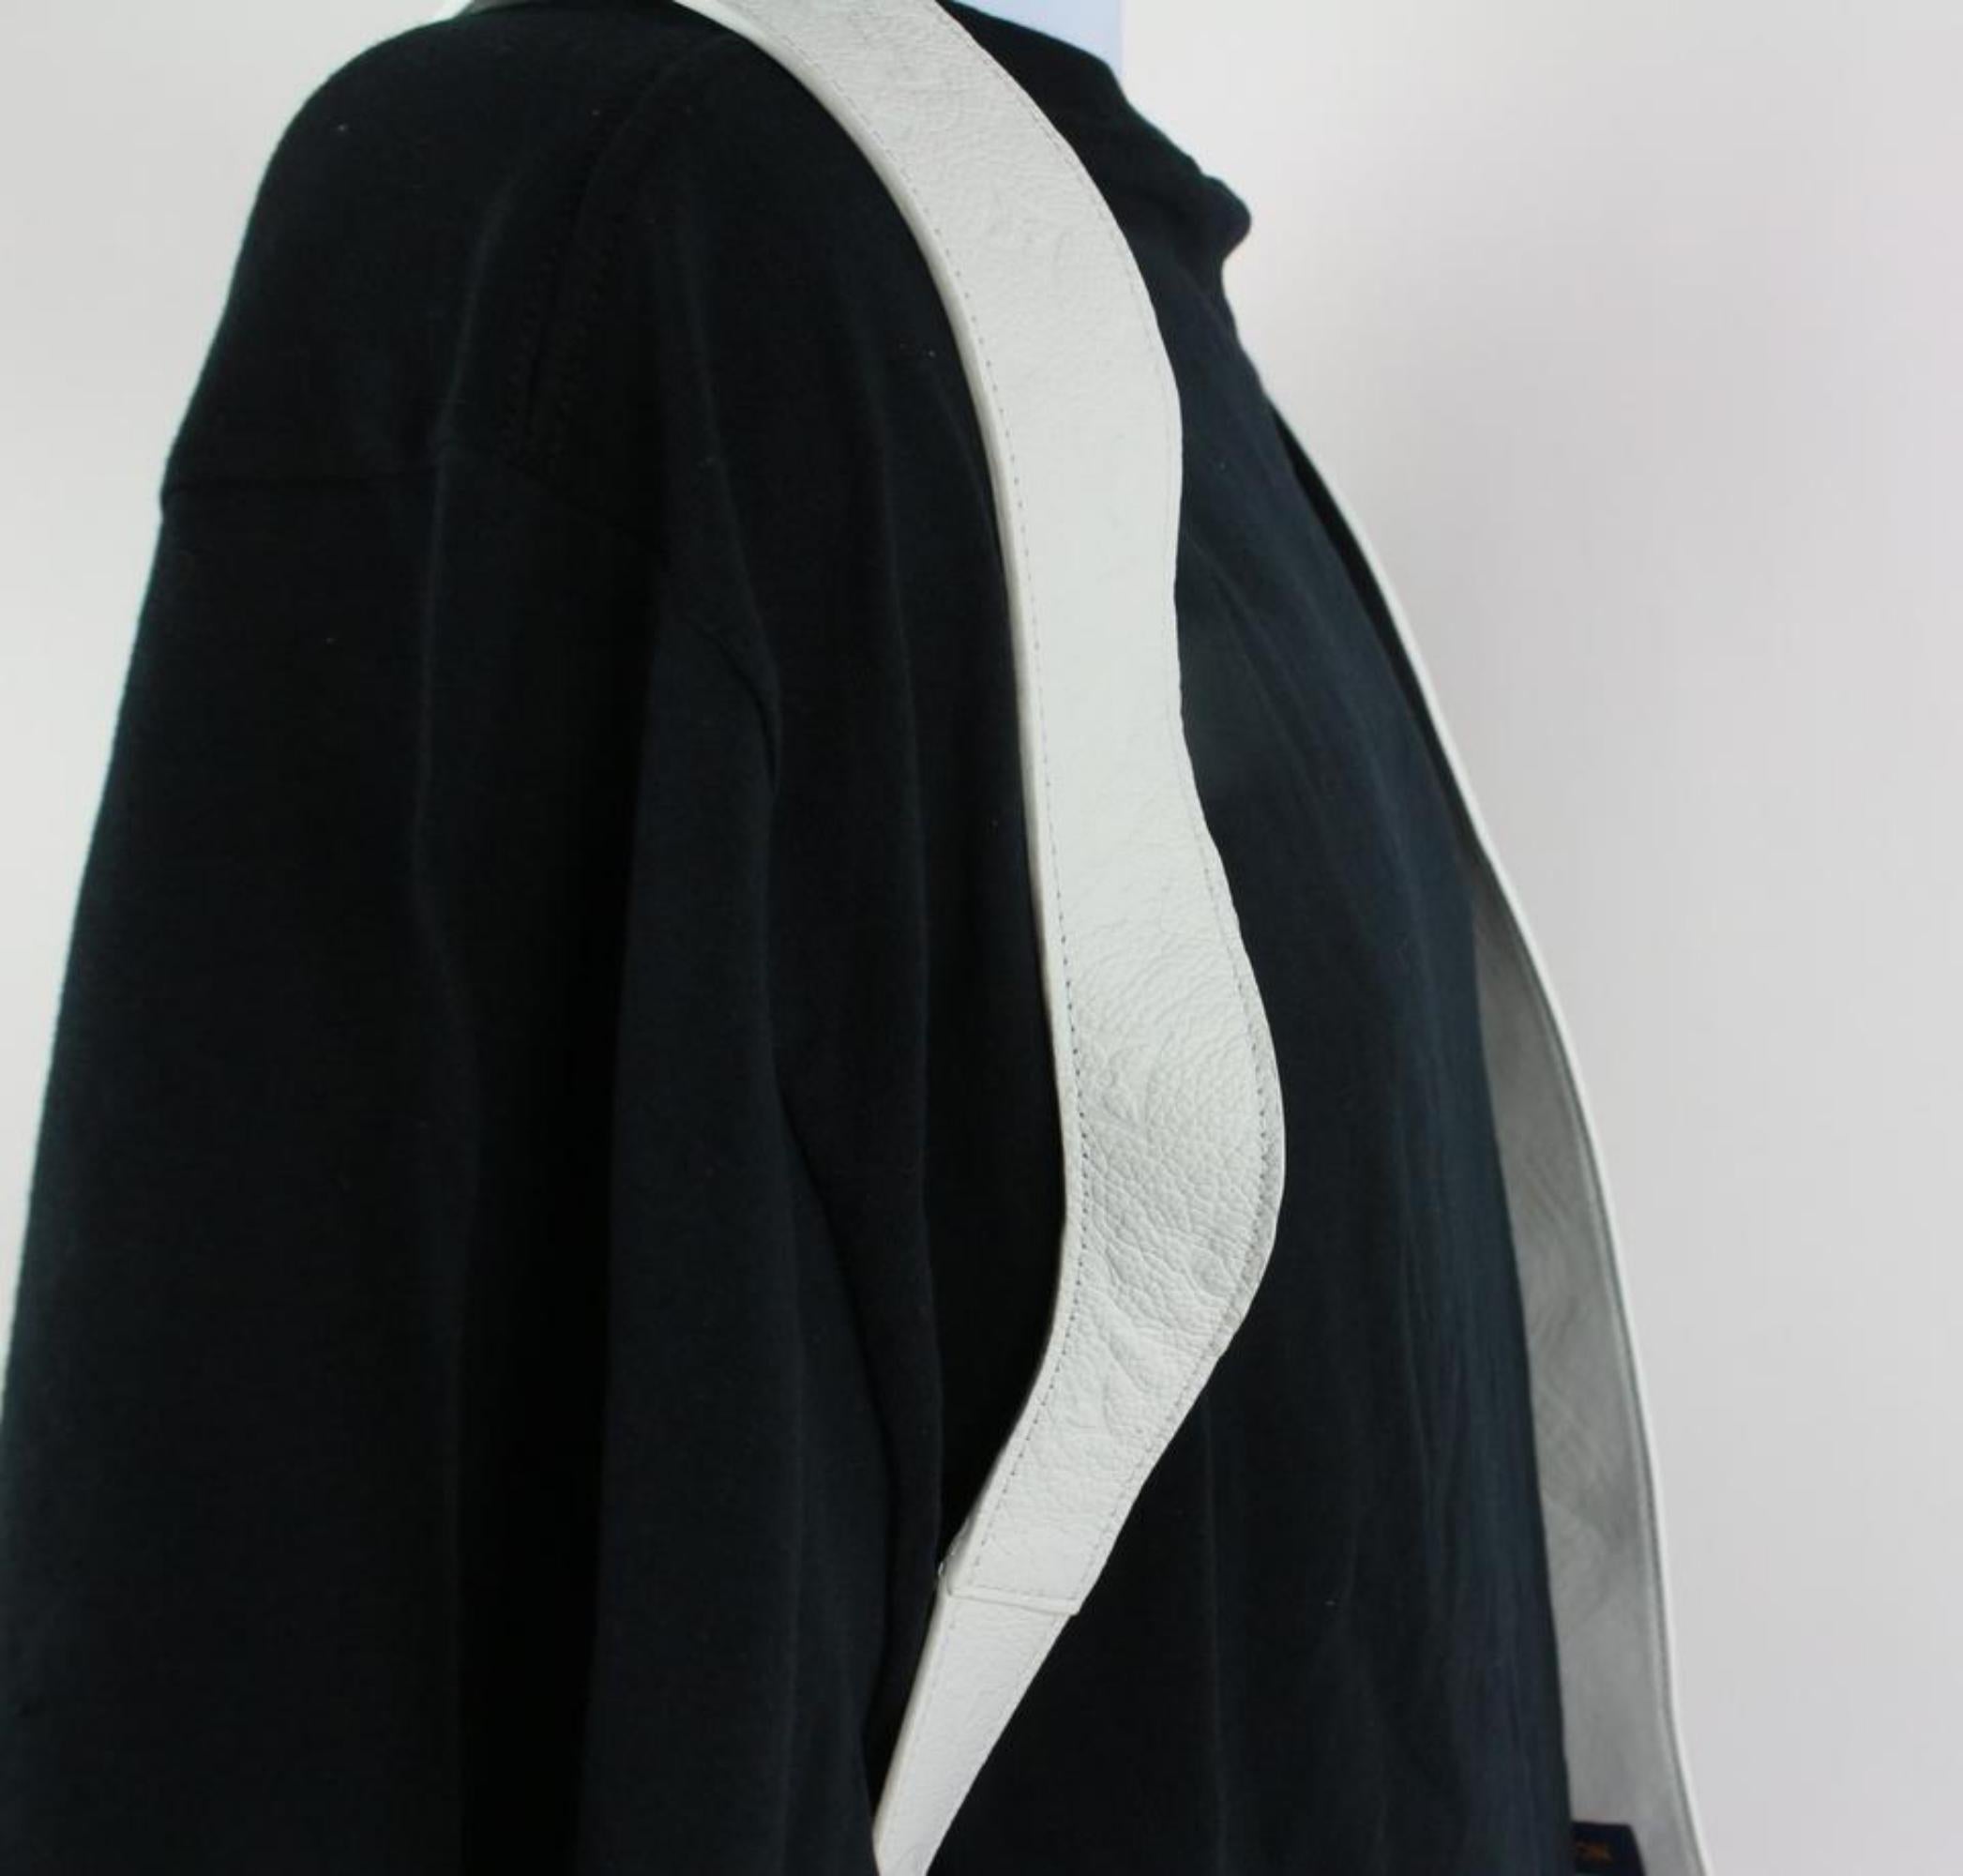 Louis Vuitton Virgil Abloh Empreinte Cut Away Vest 15lz1023 White Backpack For Sale 1